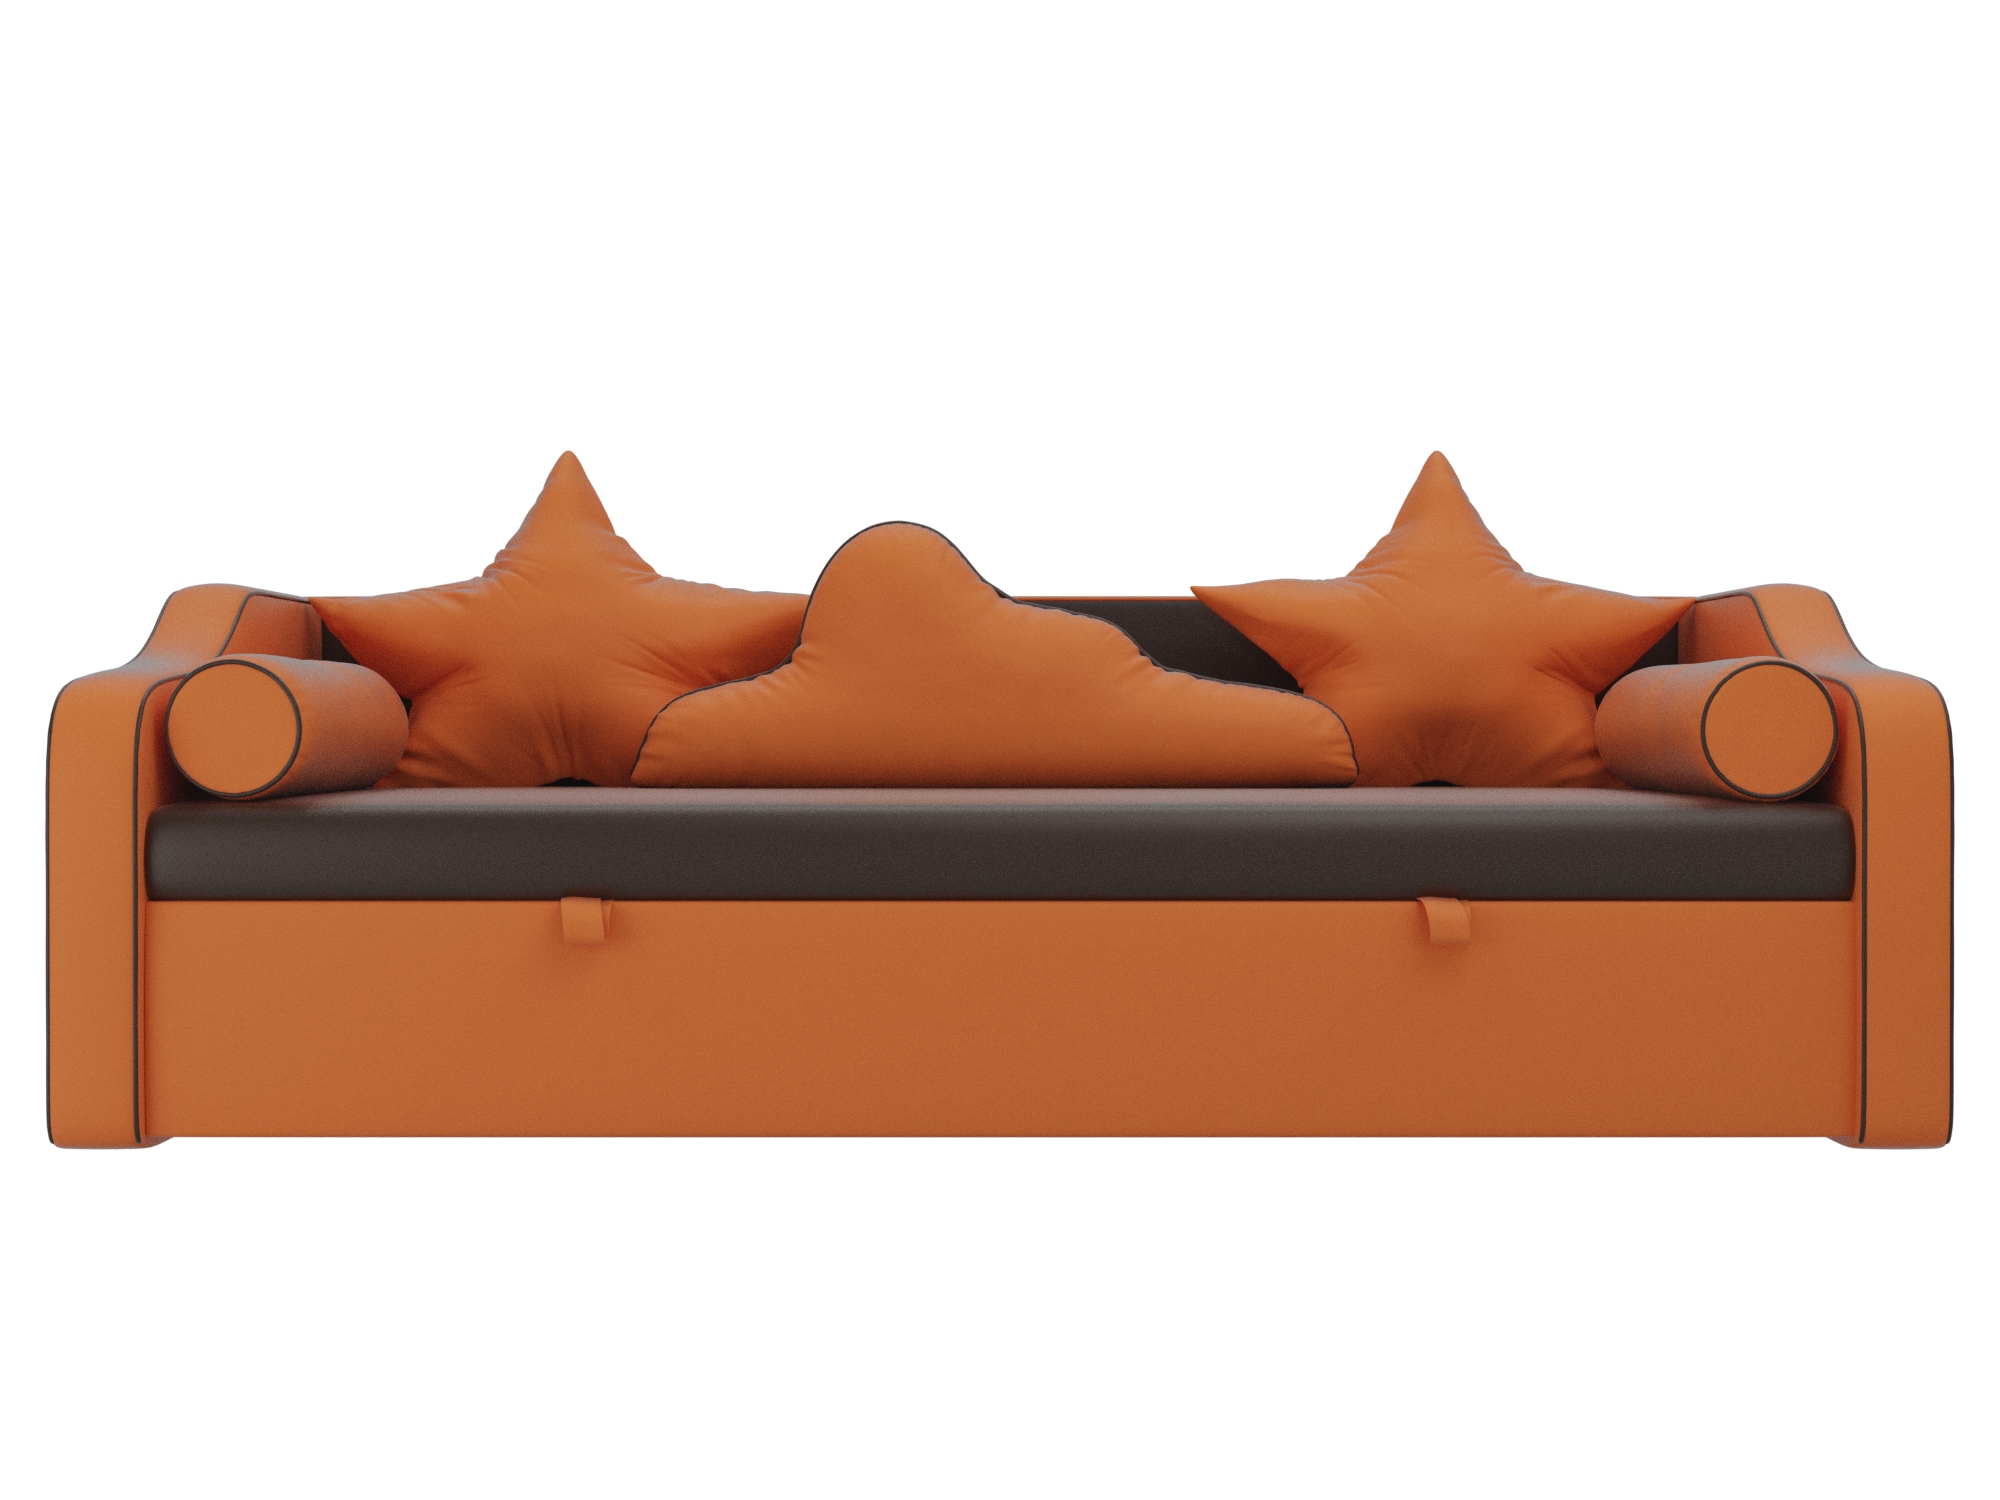 детский диван кровать рико mebelvia желтый оранжевый экокожа лдсп Детский диван-кровать Рико MebelVia Коричневый, Оранжевый, Экокожа, ЛДСП